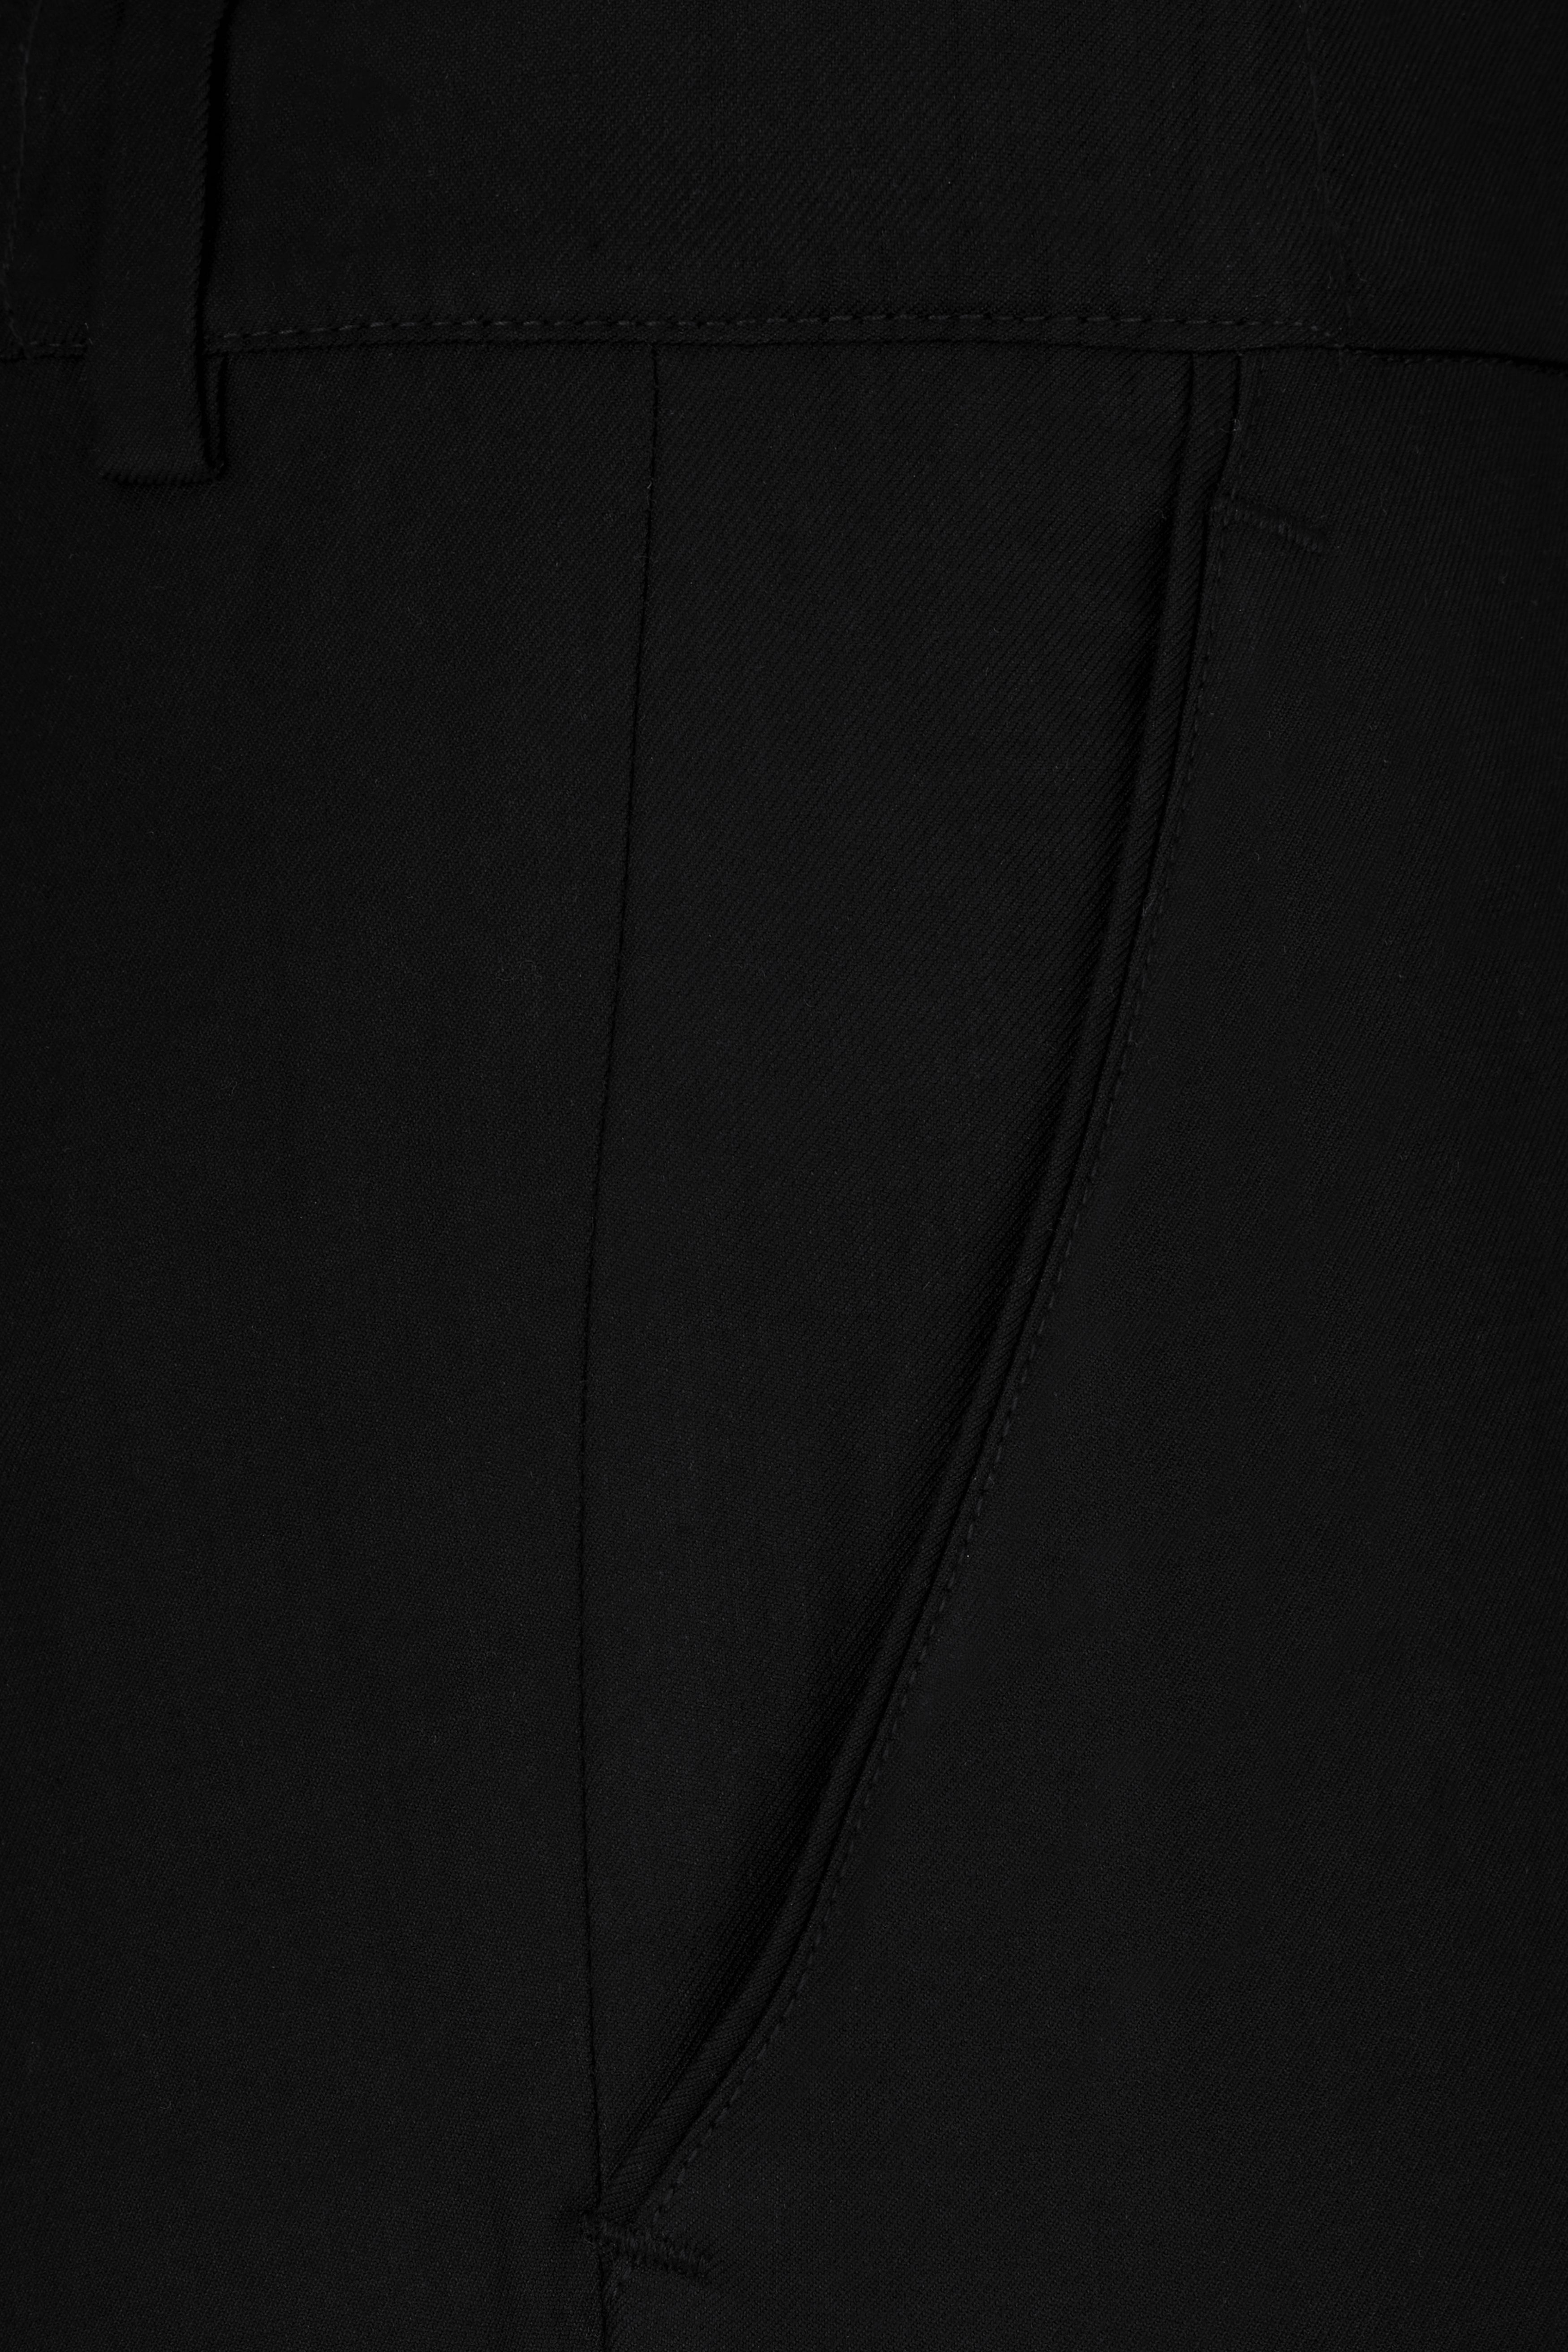 Jade Black Tikki Work Wool Rich Designer Suit ST2809-SB-D480-36,ST2809-SB-D480-38,ST2809-SB-D480-40,ST2809-SB-D480-42,ST2809-SB-D480-44,ST2809-SB-D480-46,ST2809-SB-D480-48,ST2809-SB-D480-50,ST2809-SB-D480-52,ST2809-SB-D480-54,ST2809-SB-D480-56,ST2809-SB-D480-58,ST2809-SB-D480-60